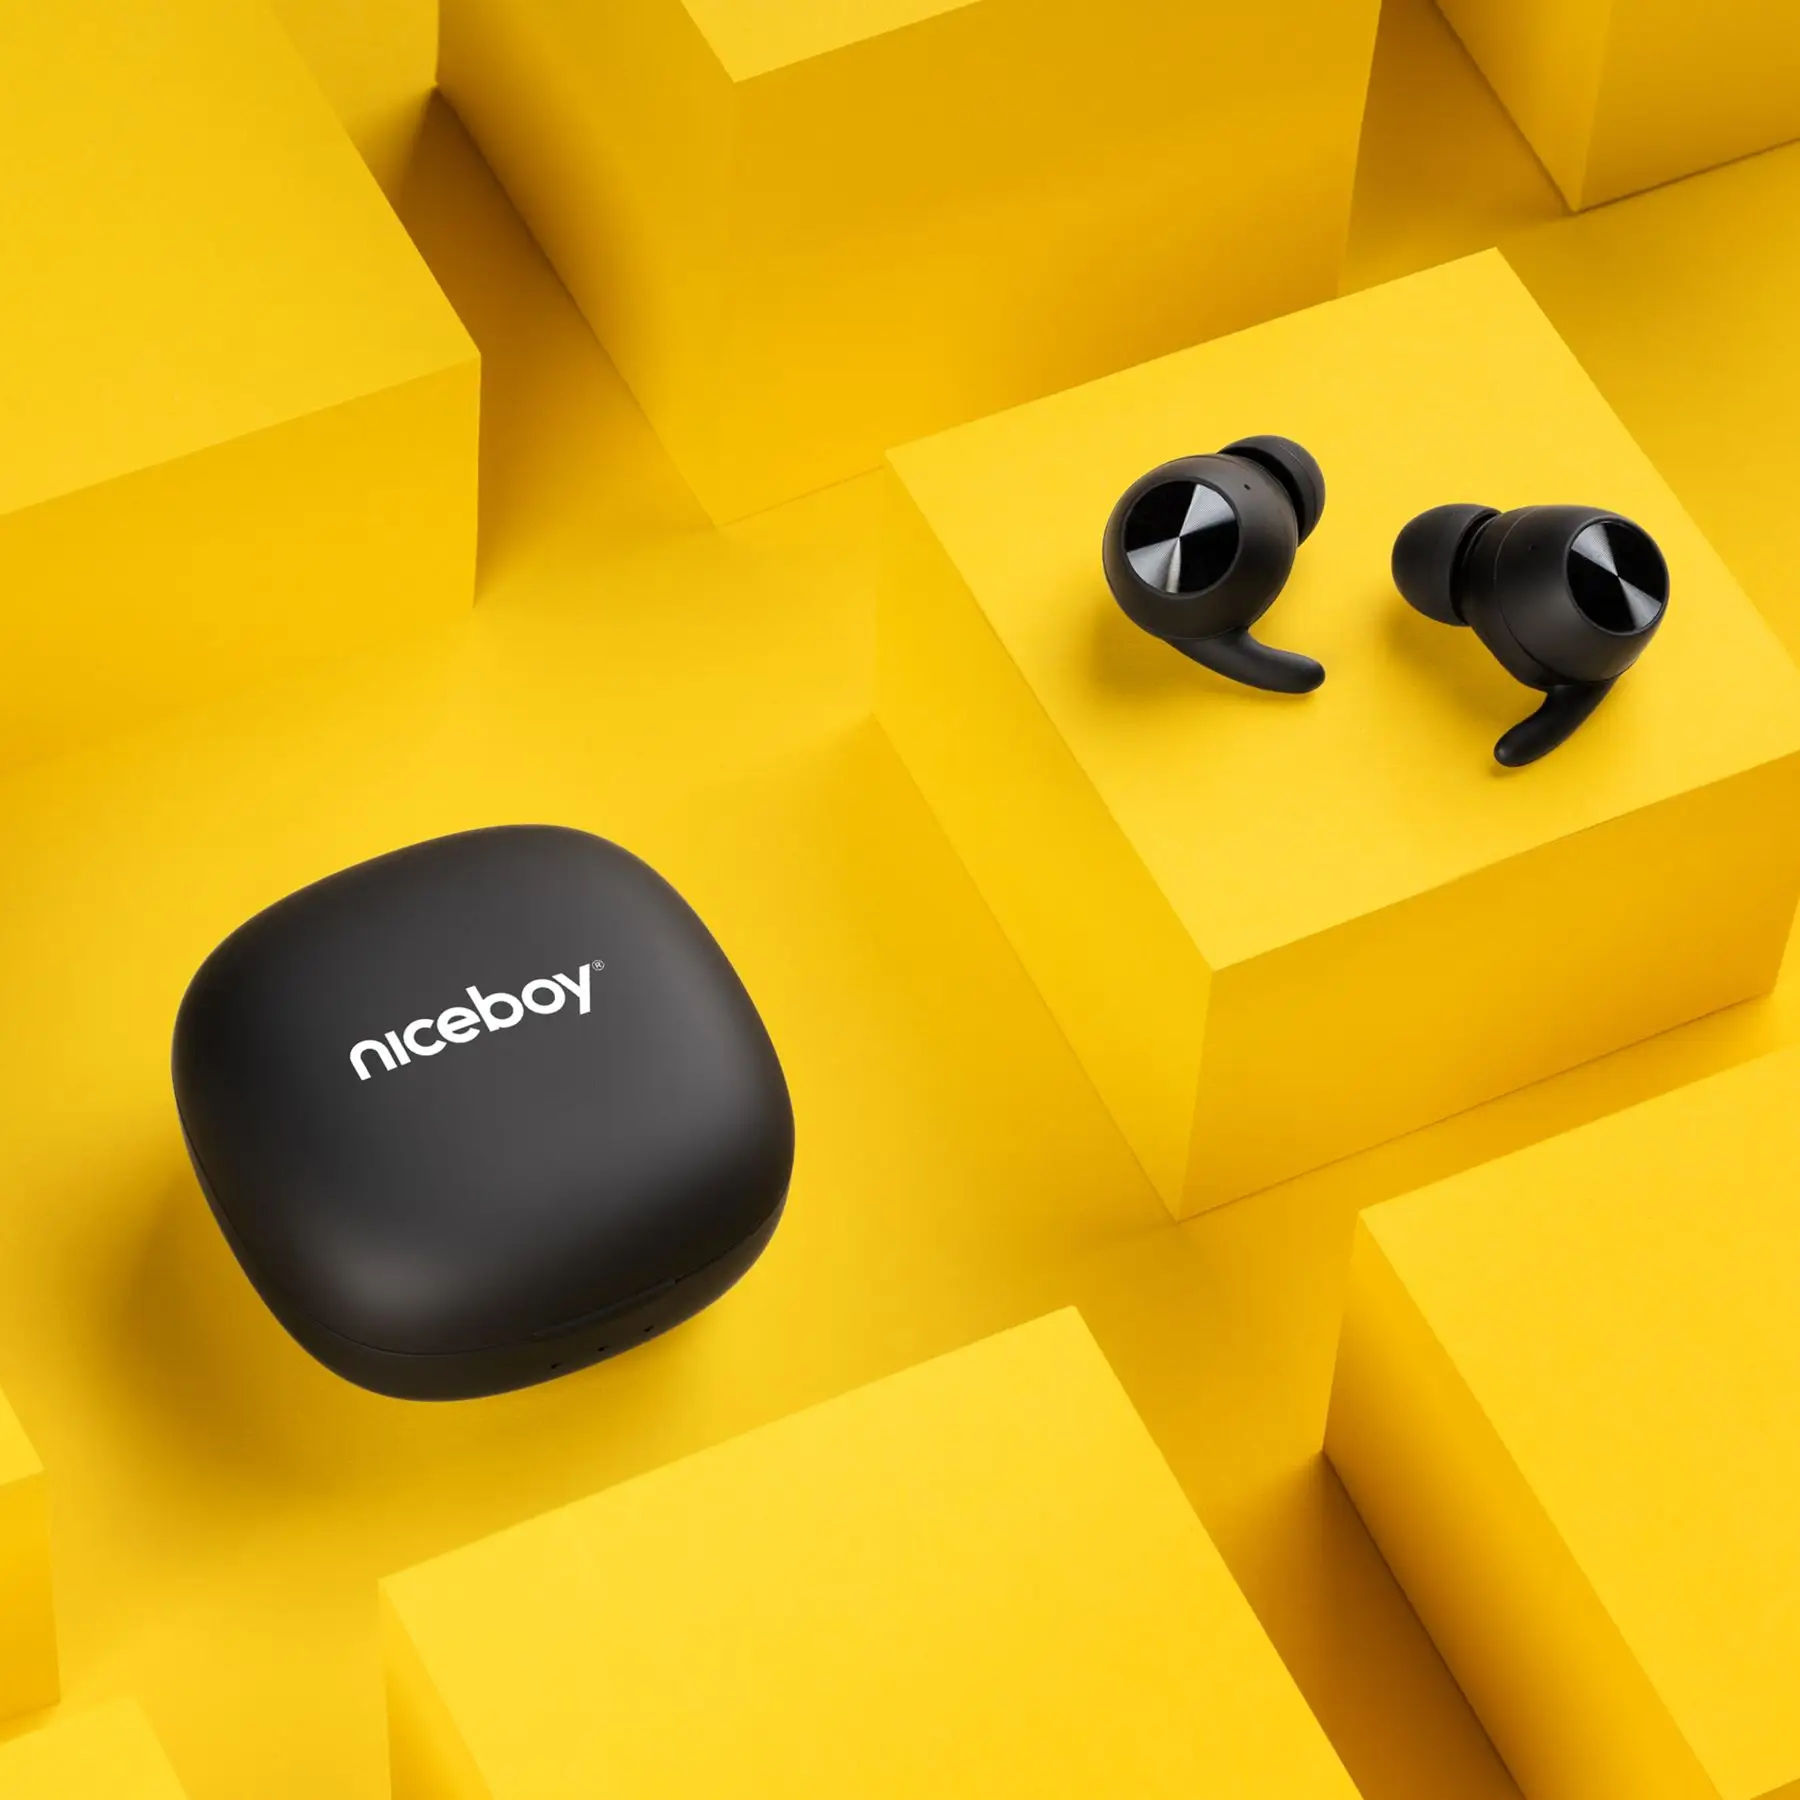  Bluetooth sluchátka niceboy hive pods 3 handsfree mikrofon aplikace ion ekvalizér skvělý zvuk dlouhá výdrž na nabití nabíjecí pouzdro gaming režim 